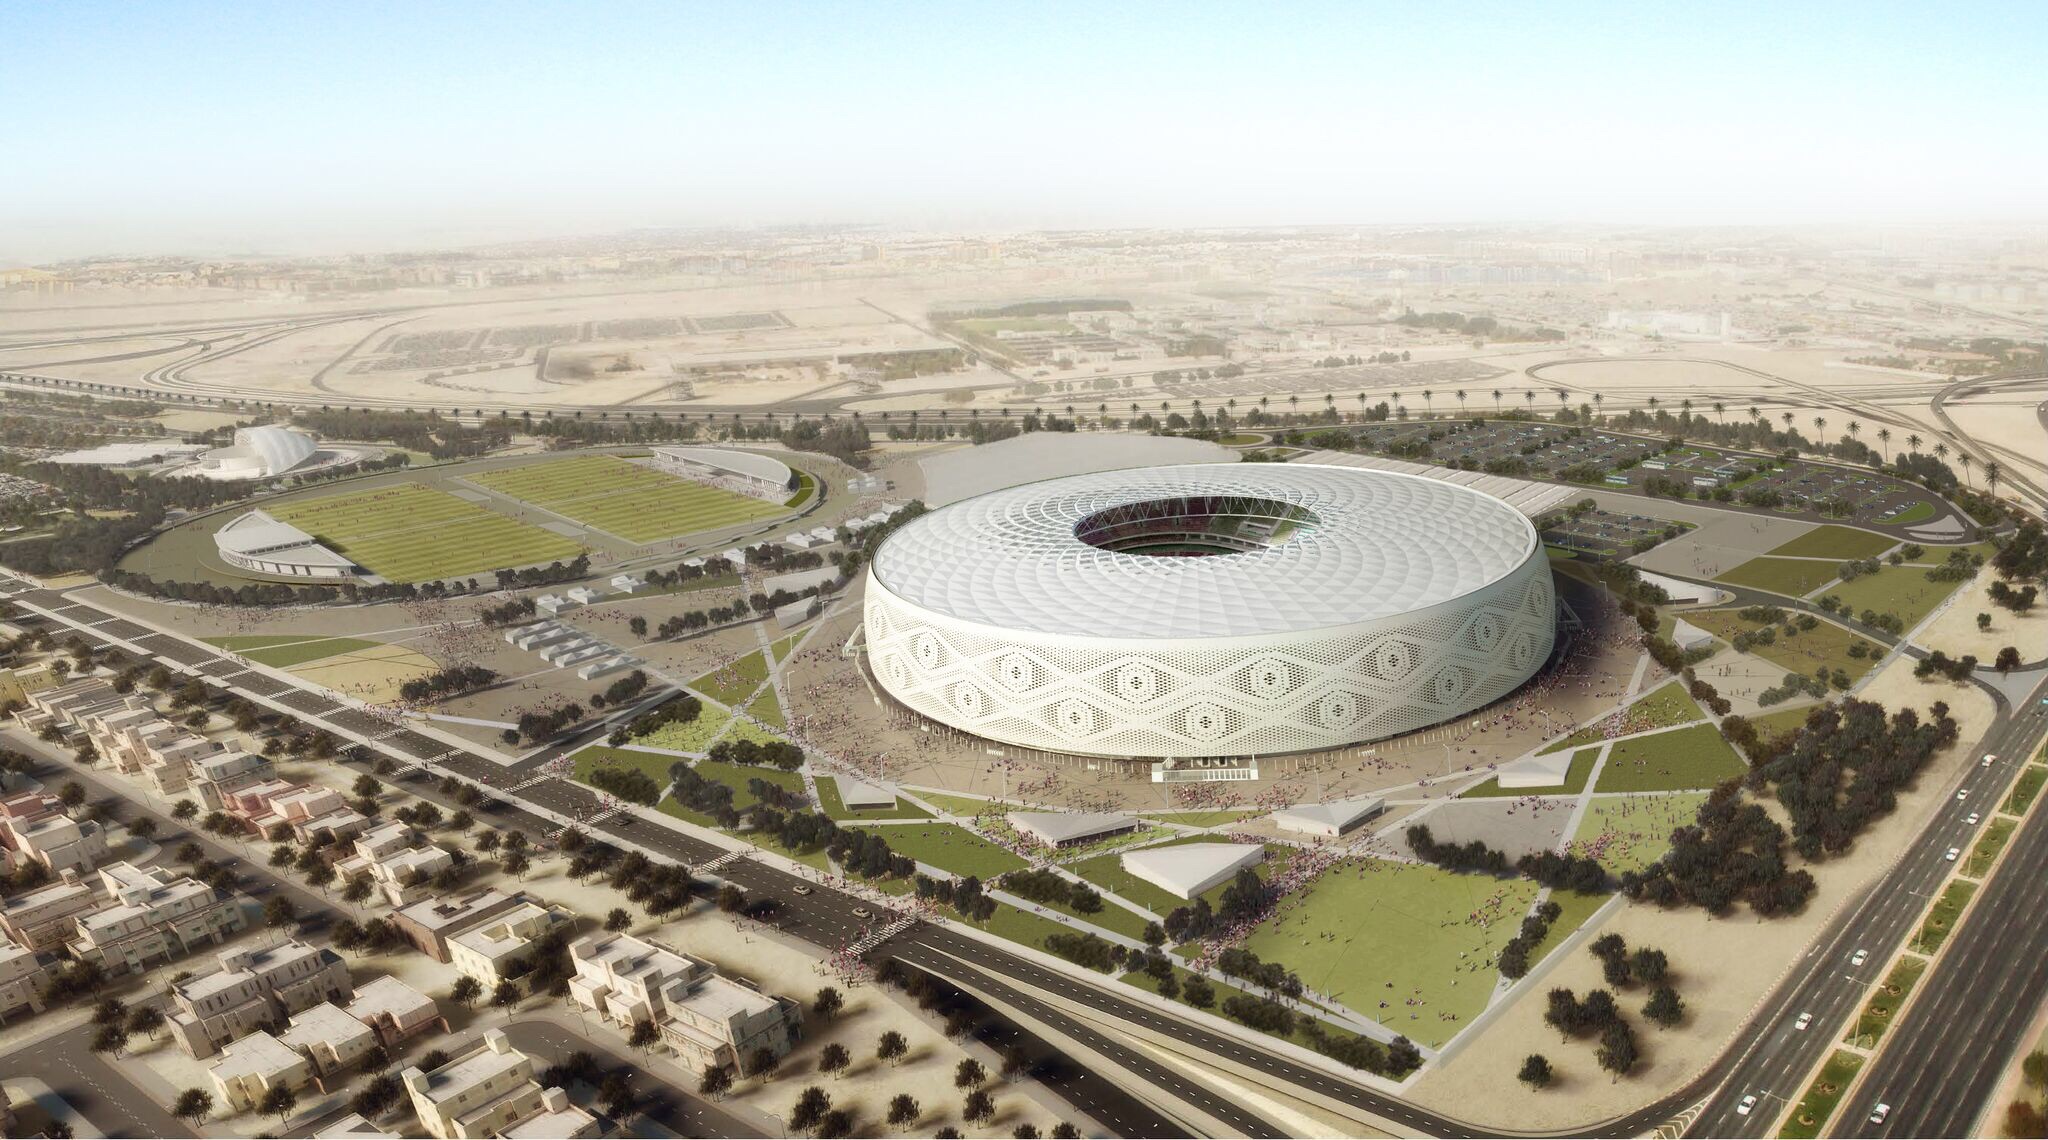 تصميم استاد الثمامة سادس الاستادات المرشحة لاستضافة بطولة كأس العالم لكرة القدم قطر 2022